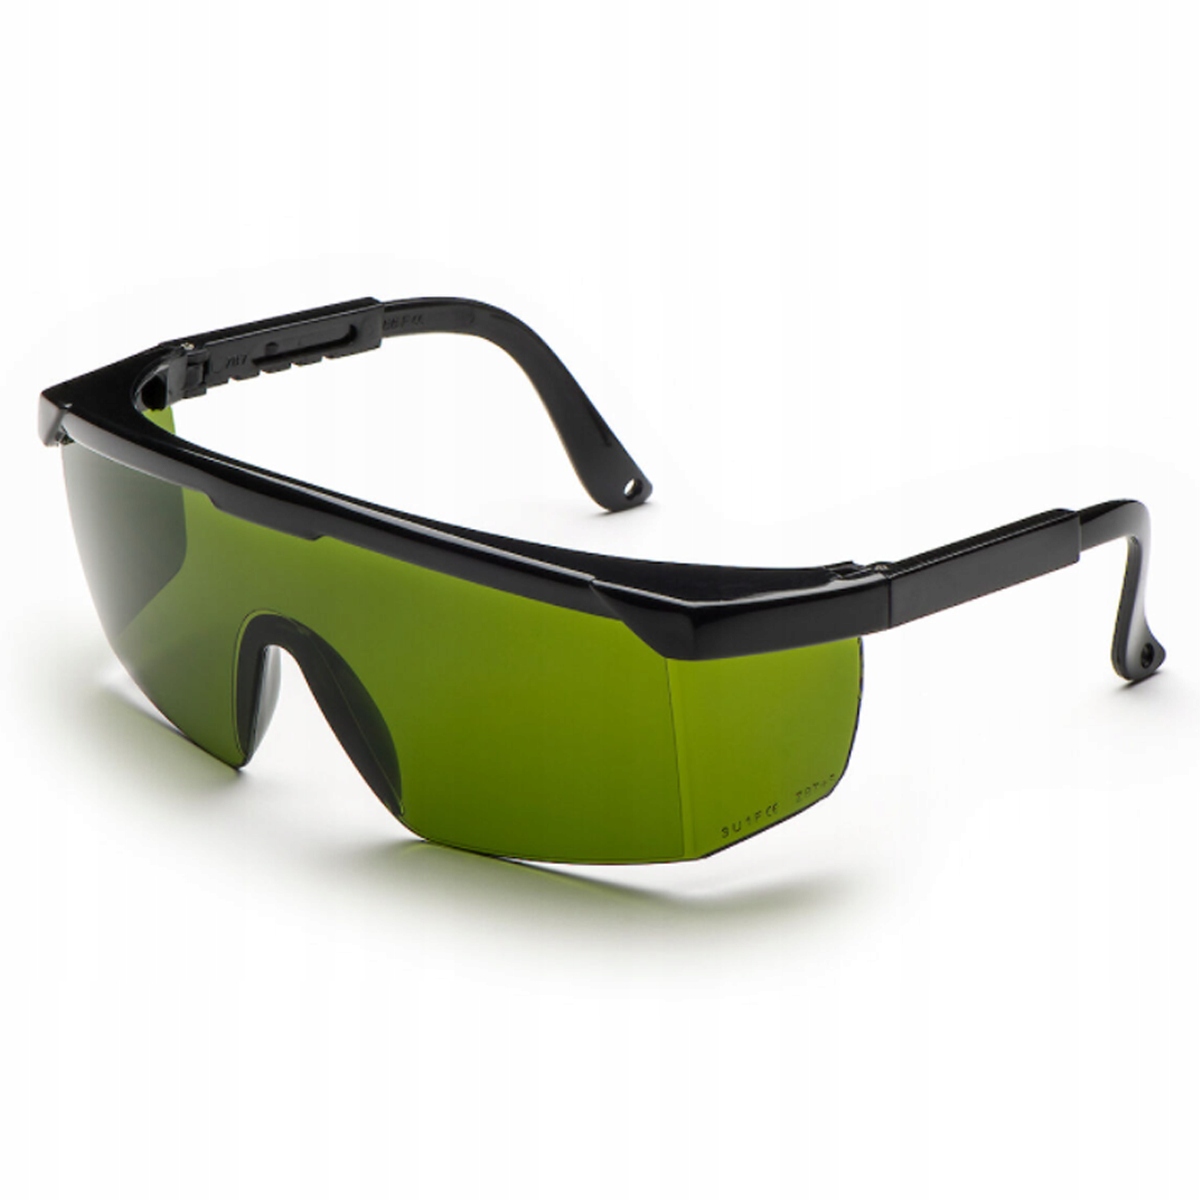 Glasses pc. Очки Univet-568. Очки защитные Univet. Очки Honeywell Laser Protective 31-3984. Защитные очки для лазера зеленые.